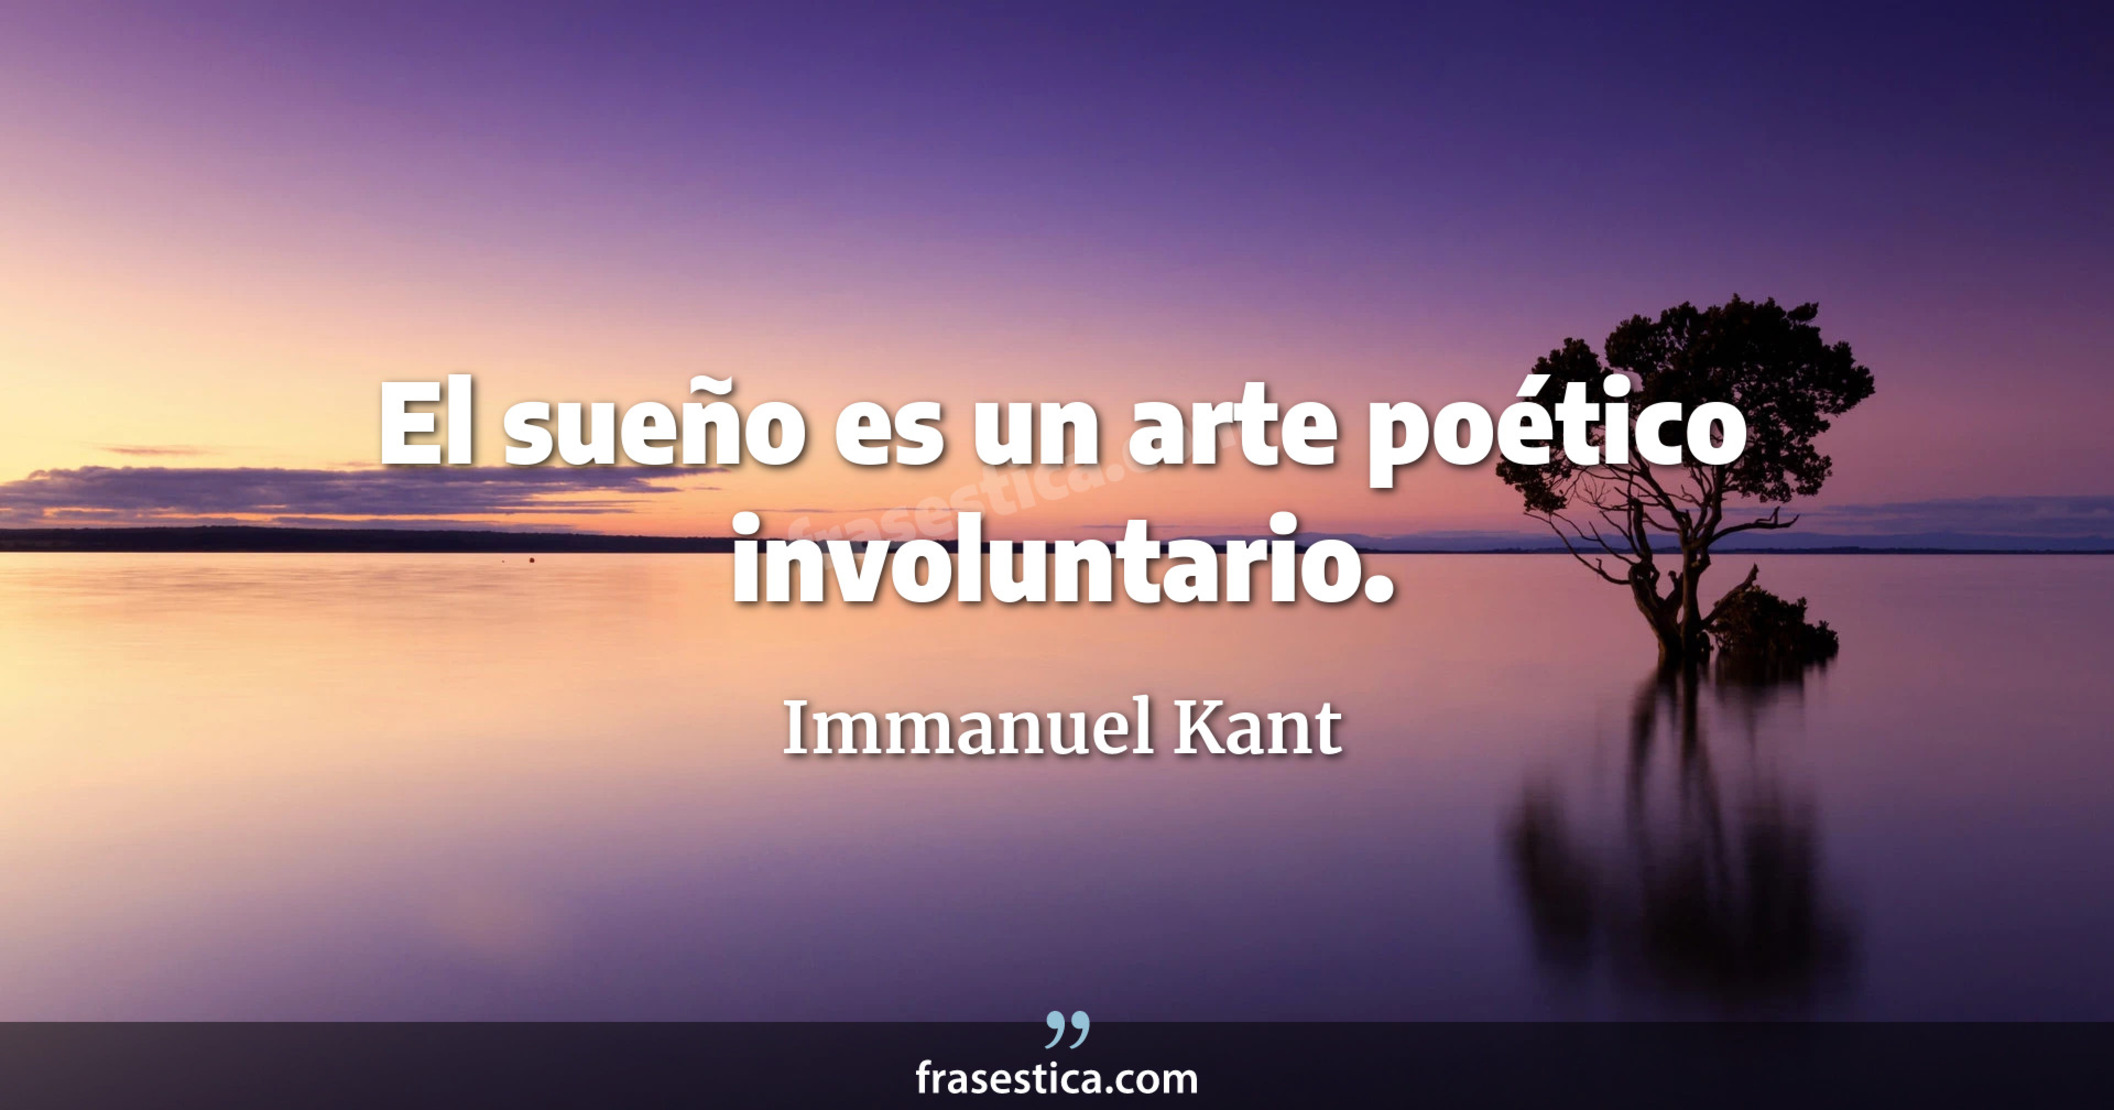 El sueño es un arte poético involuntario. - Immanuel Kant